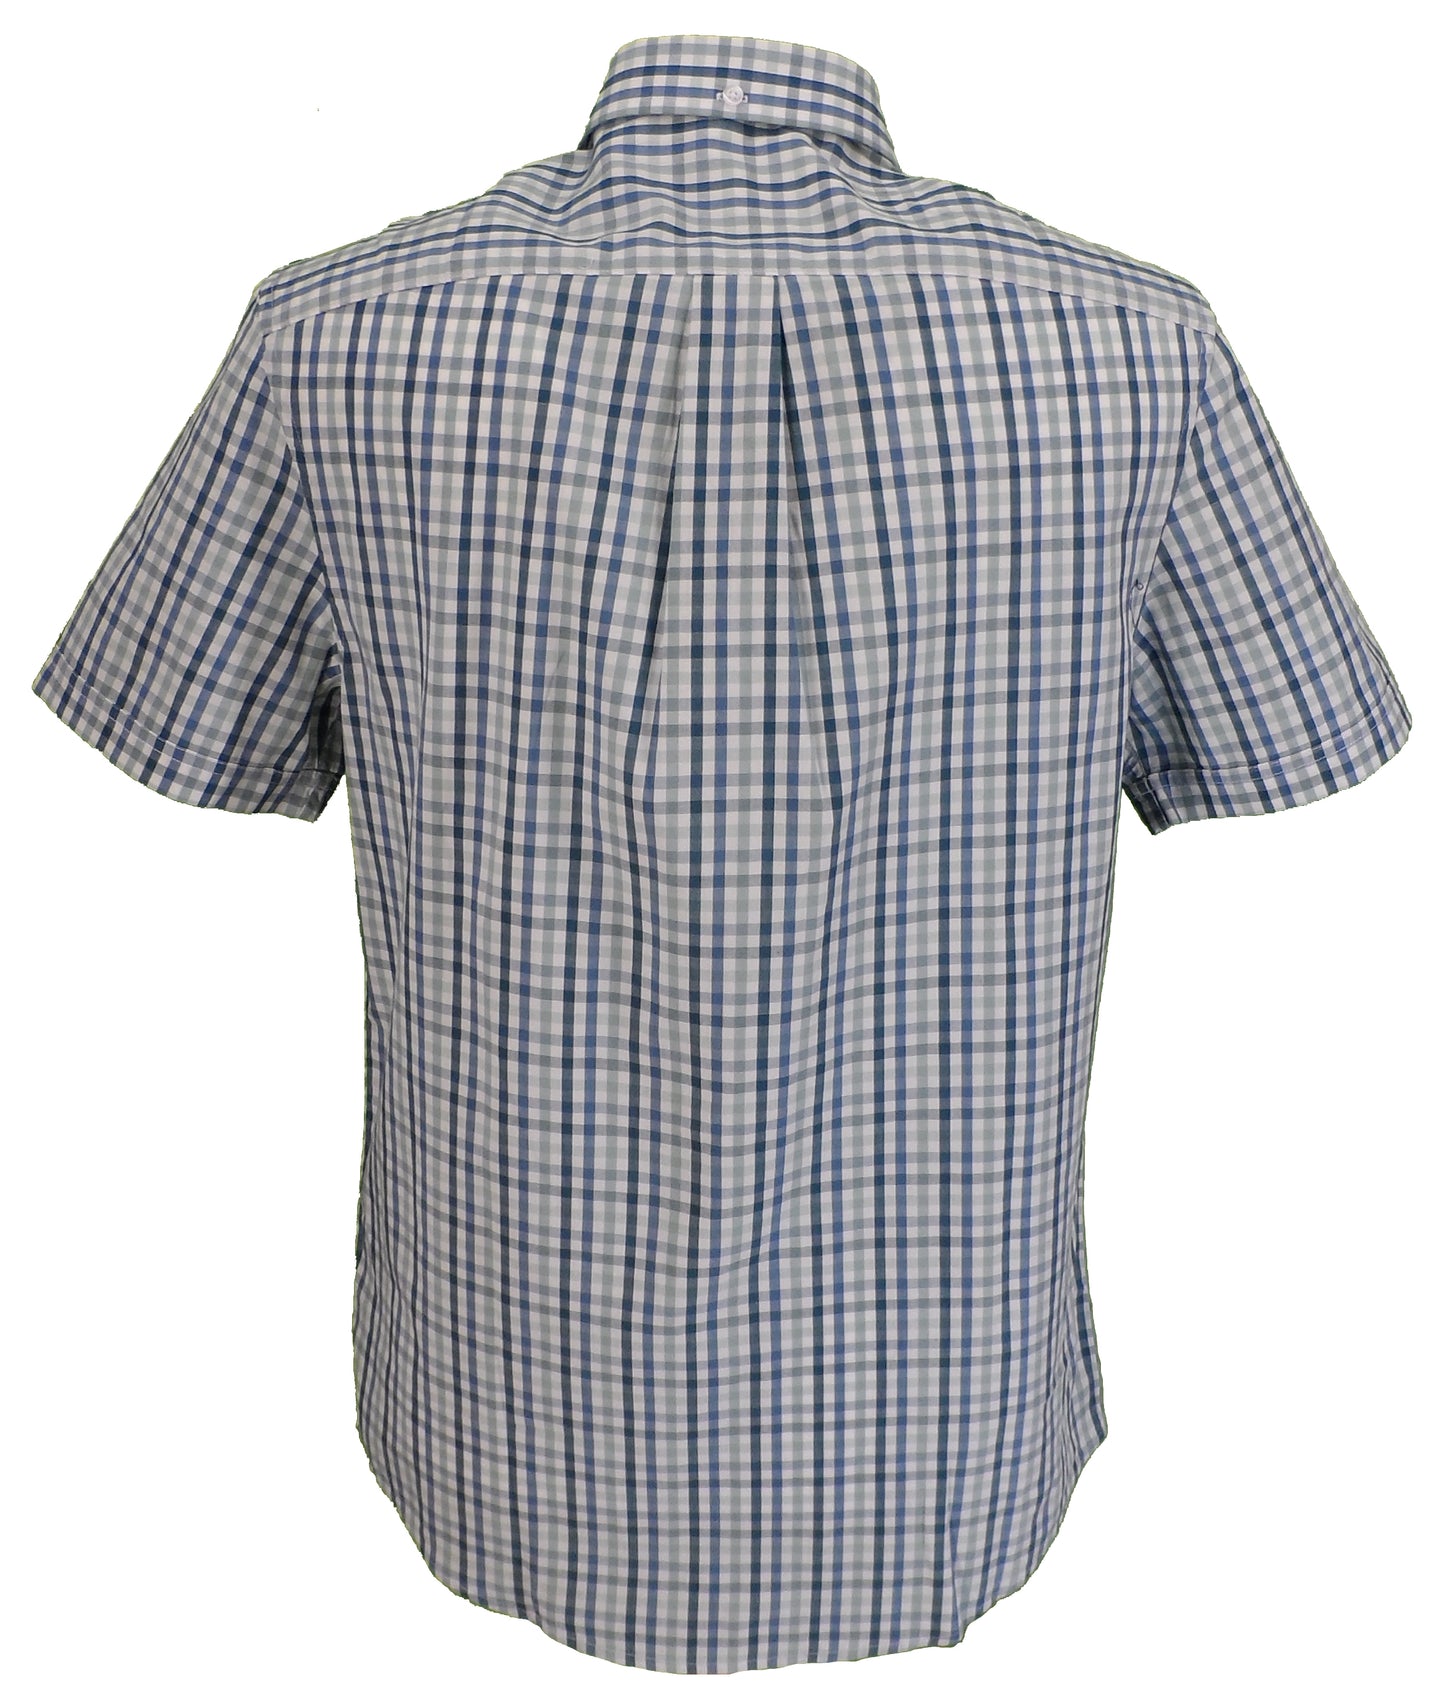 Farah Camisa de manga corta 100% algodón con cuadros surf vichy azul